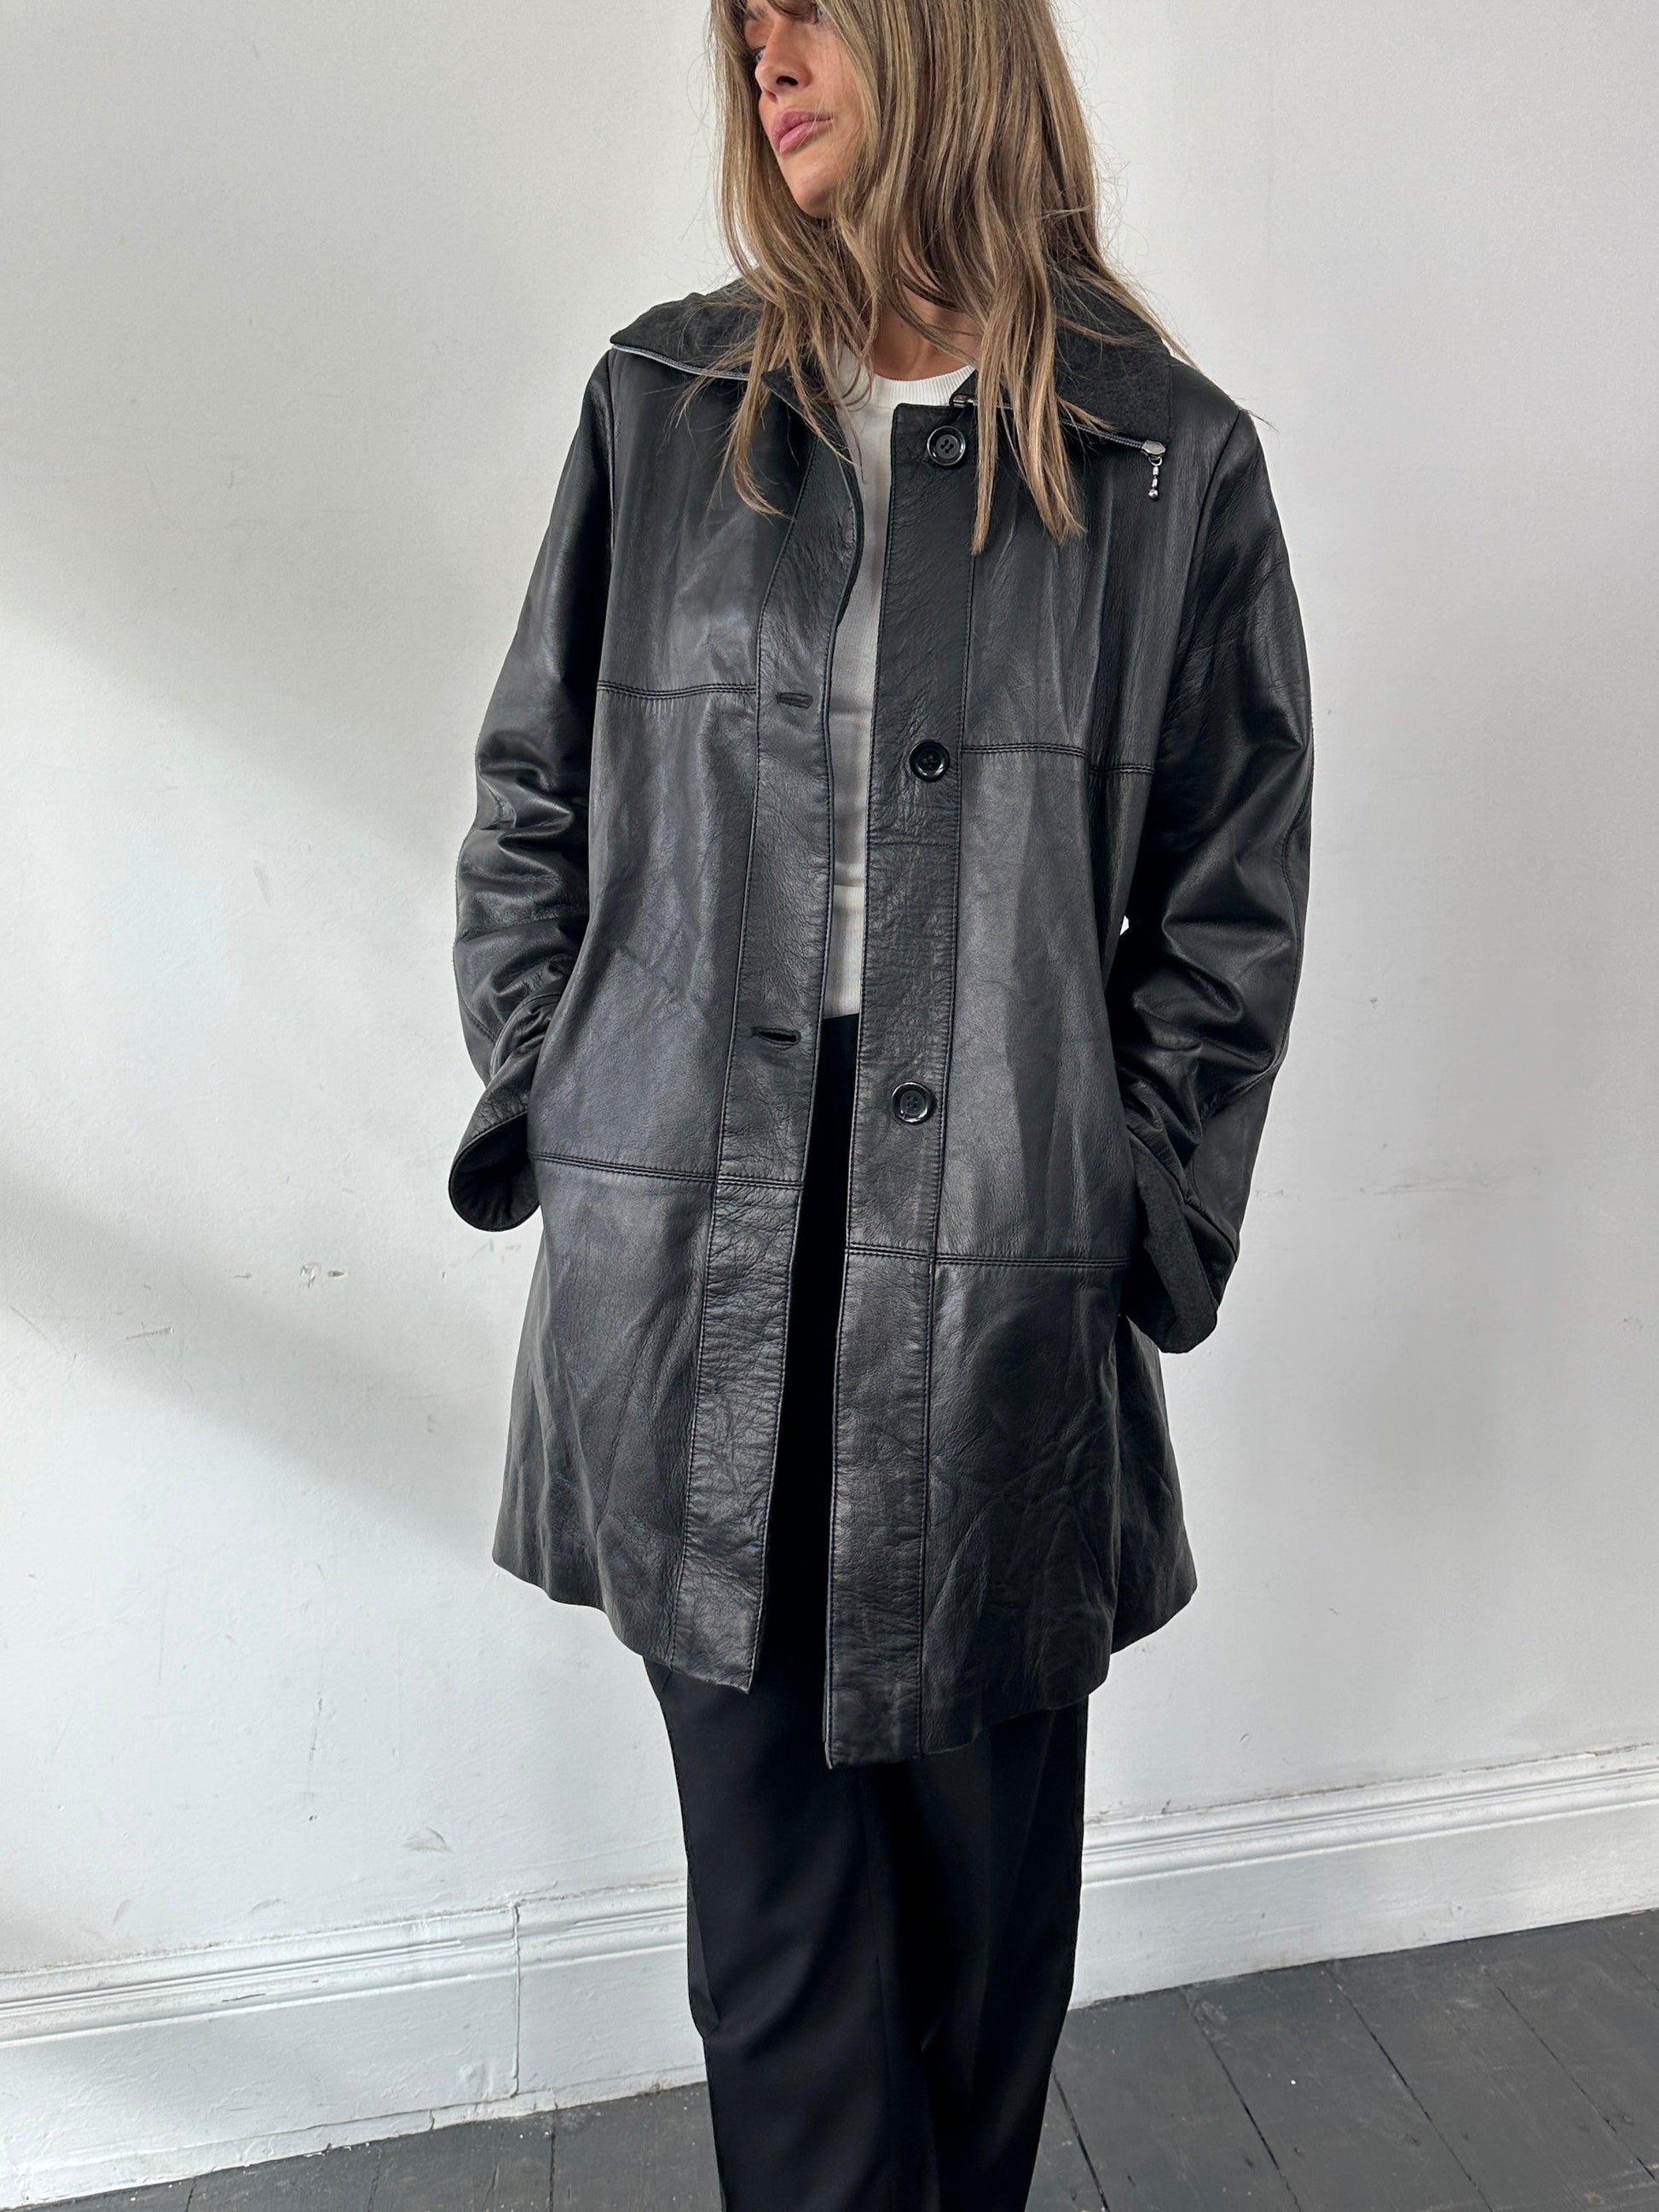 Conbipel Italian Fleece Lined Leather Coat - L/XL - Known Source